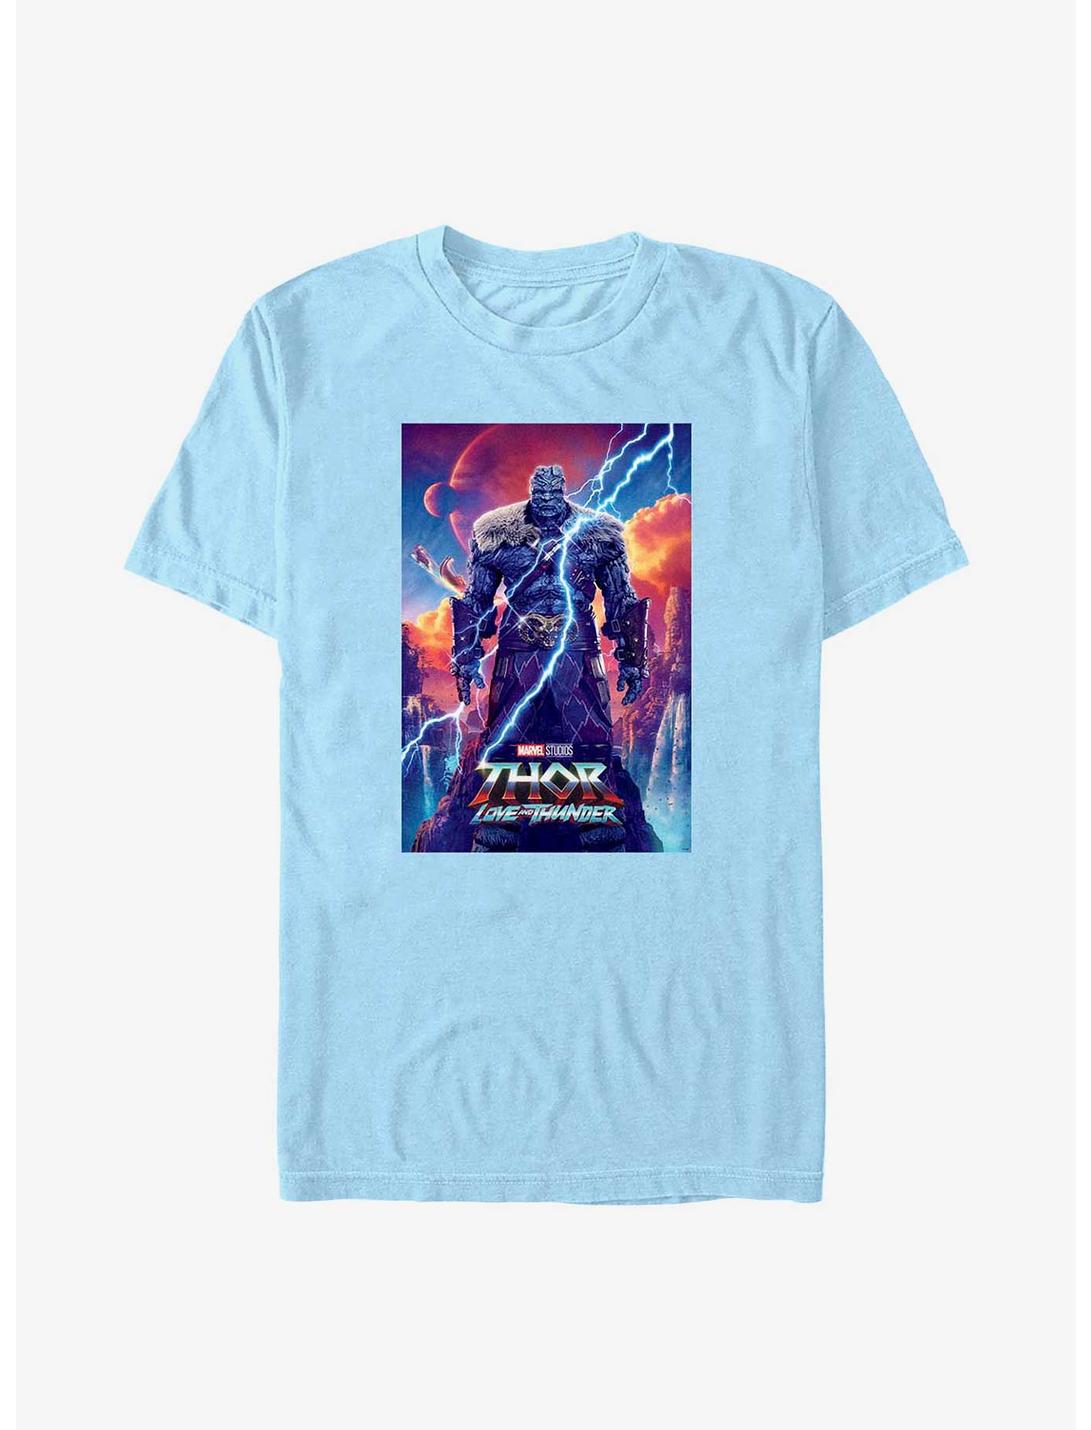 Marvel Thor: Love and Thunder Korg Movie Poster T-Shirt, LT BLUE, hi-res